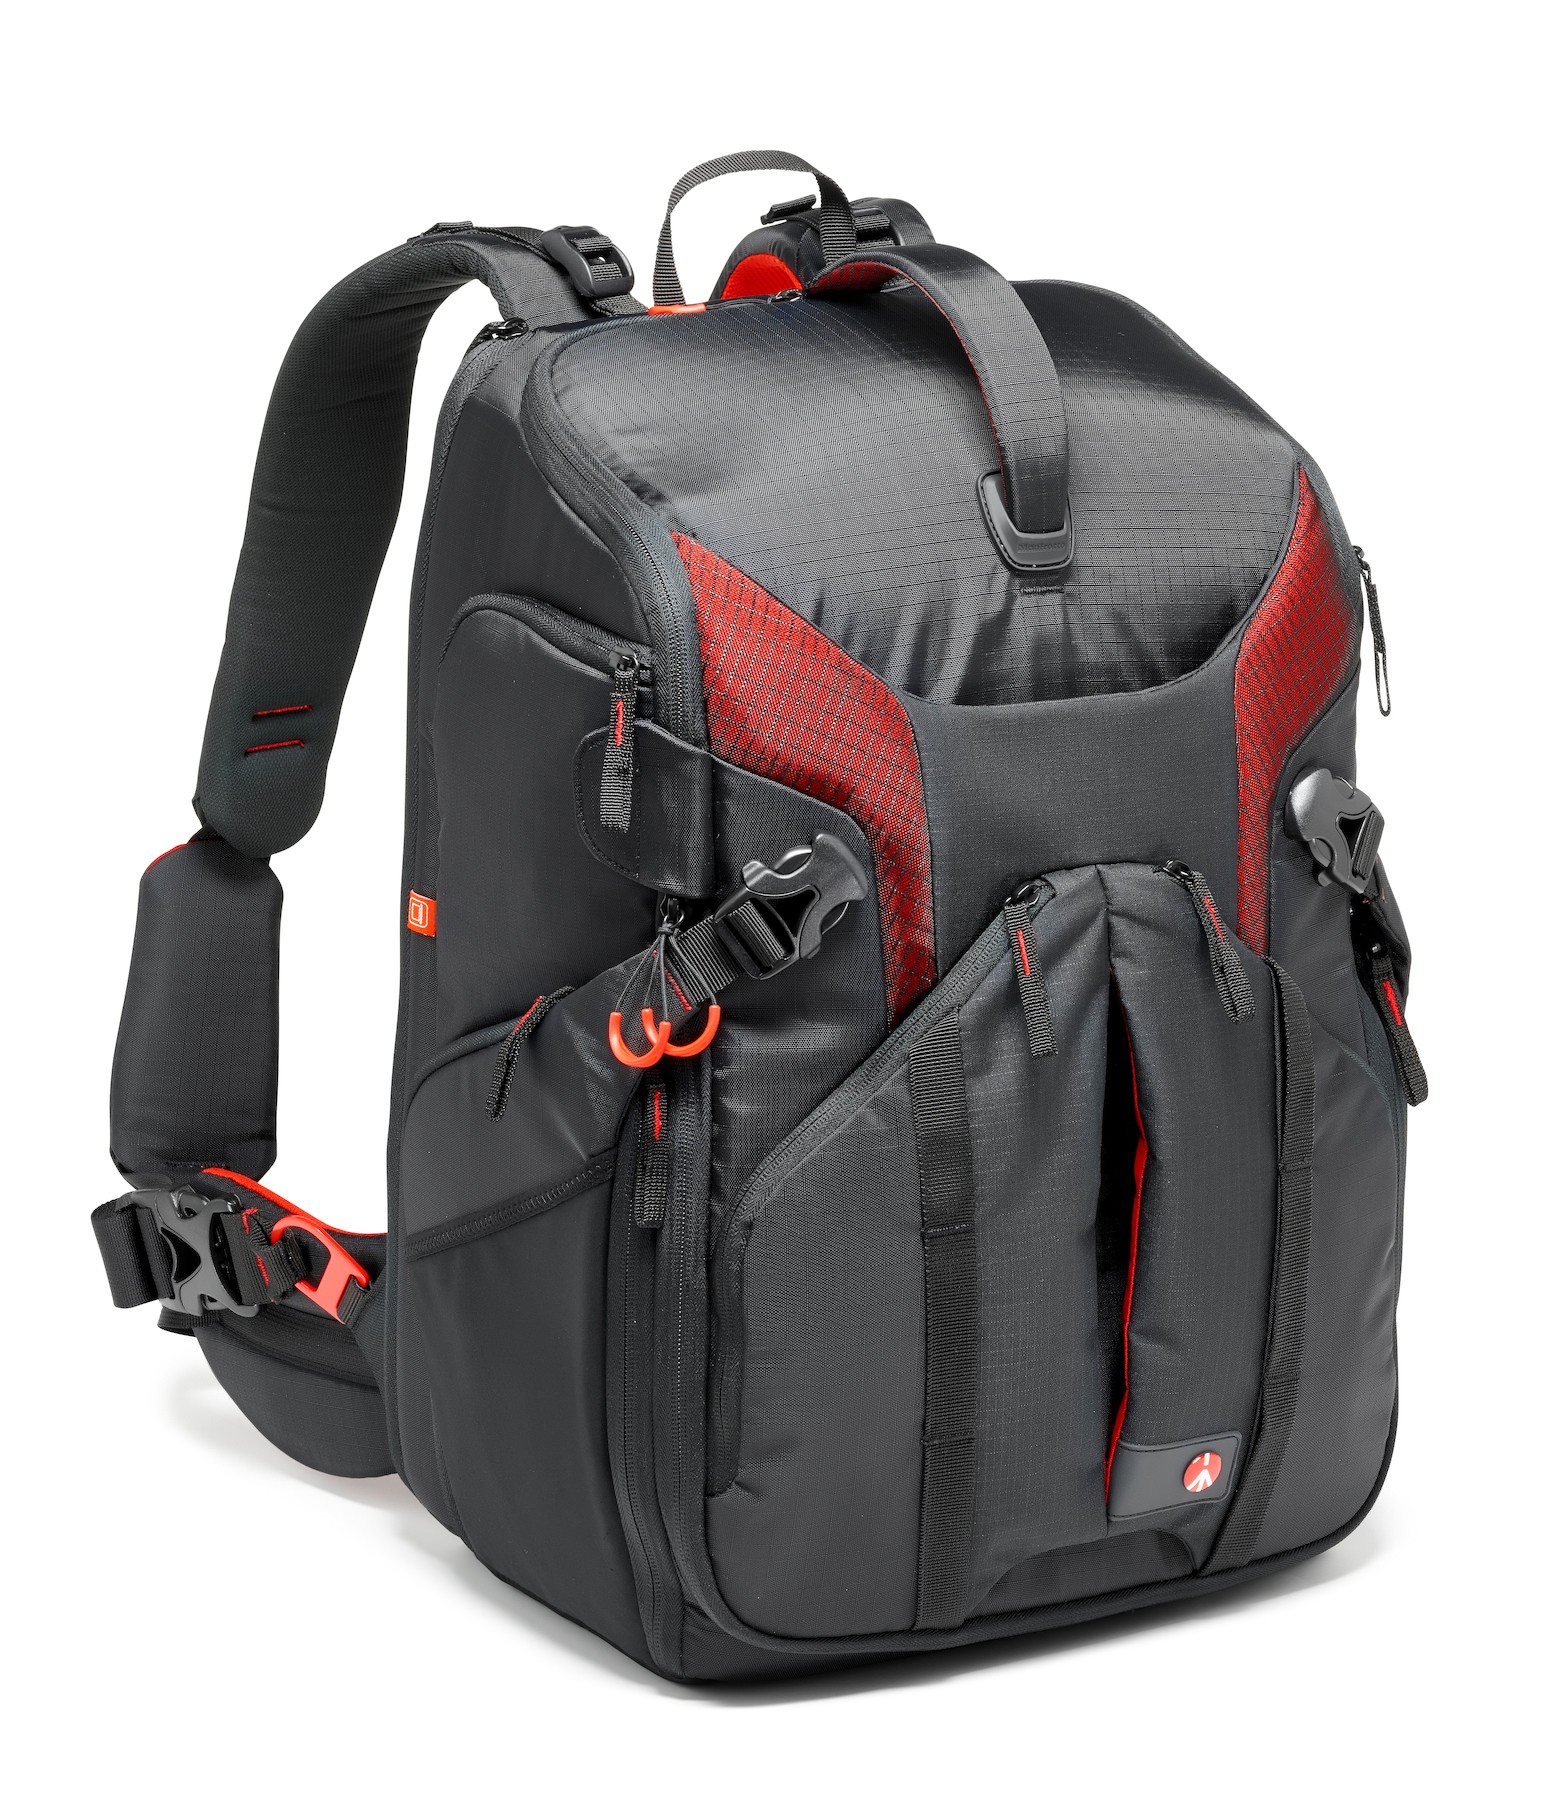 Pro Light camera backpack 3N1-36 for DSLR/C100/DJI Phantom